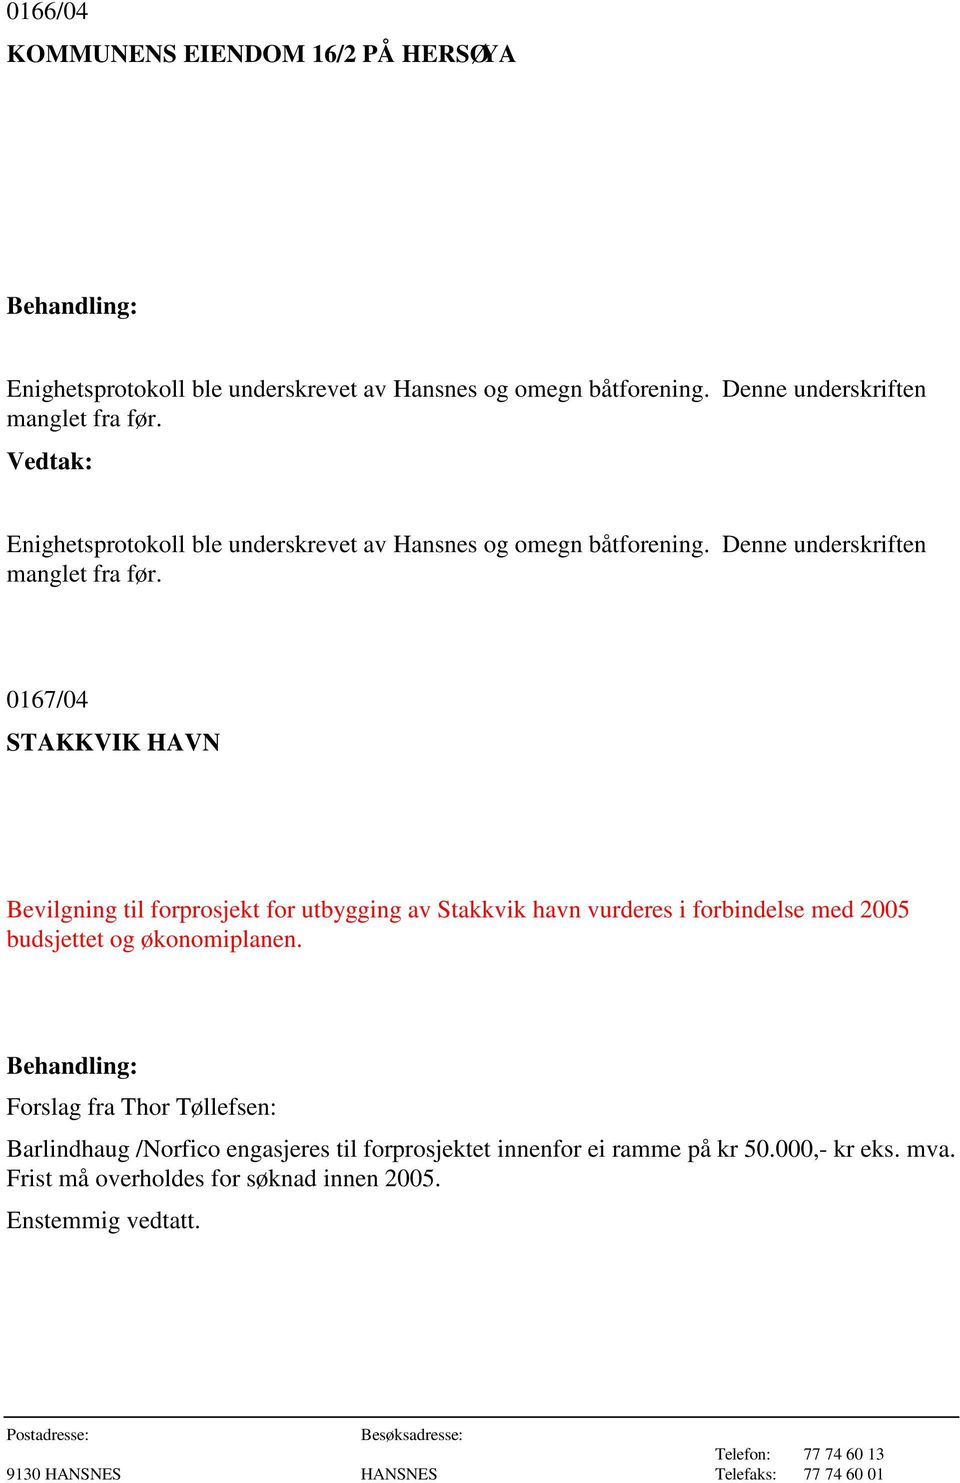 0167/04 STAKKVIK HAVN Bevilgning til forprosjekt for utbygging av Stakkvik havn vurderes i forbindelse med 2005 budsjettet og økonomiplanen.